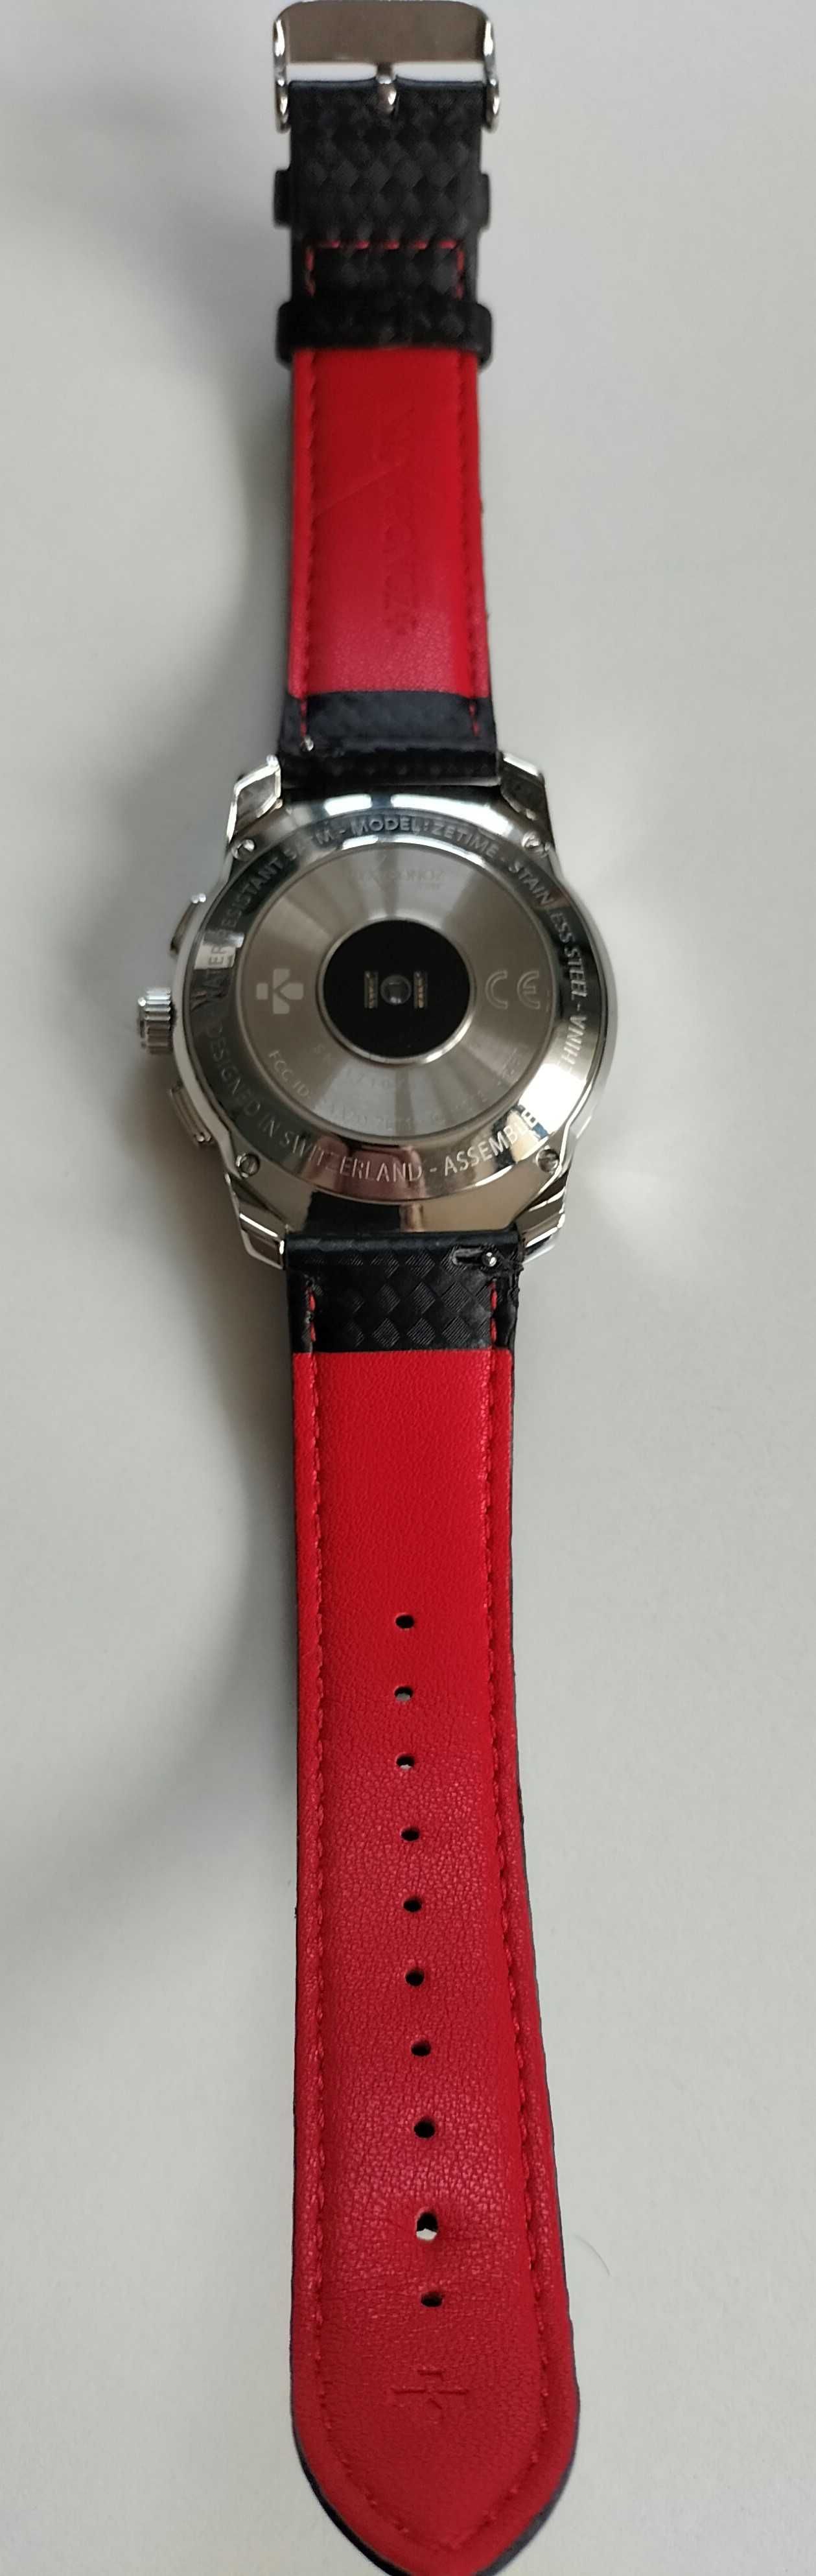 Zegarek Mykronoz Zetime Premium smartwatch hybrydowy